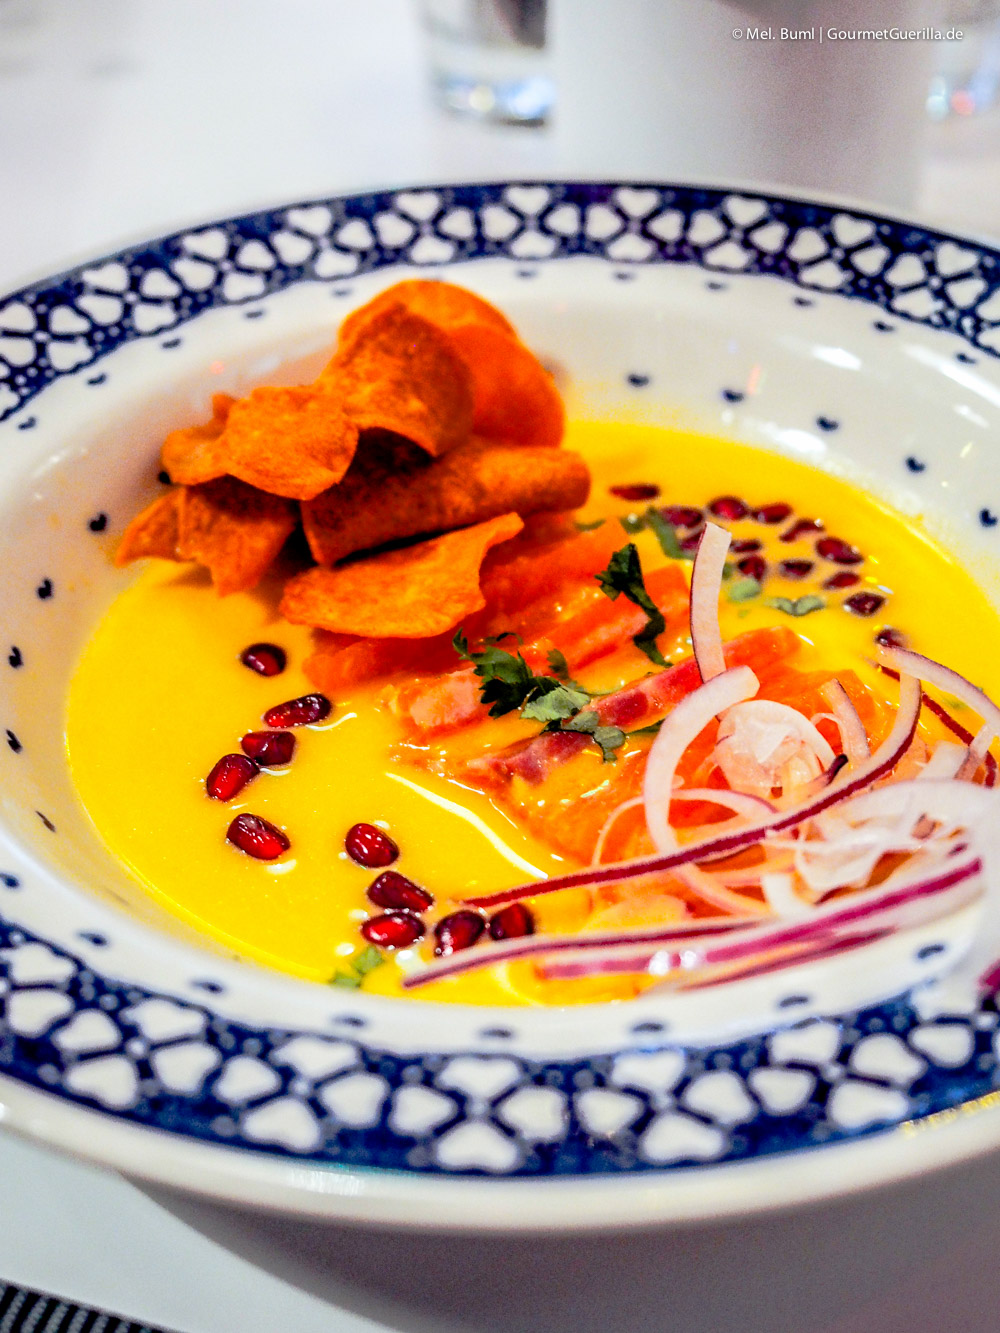 Restaurant Peru Leche de Tigre Hamburg | GourmetGuerilla.de